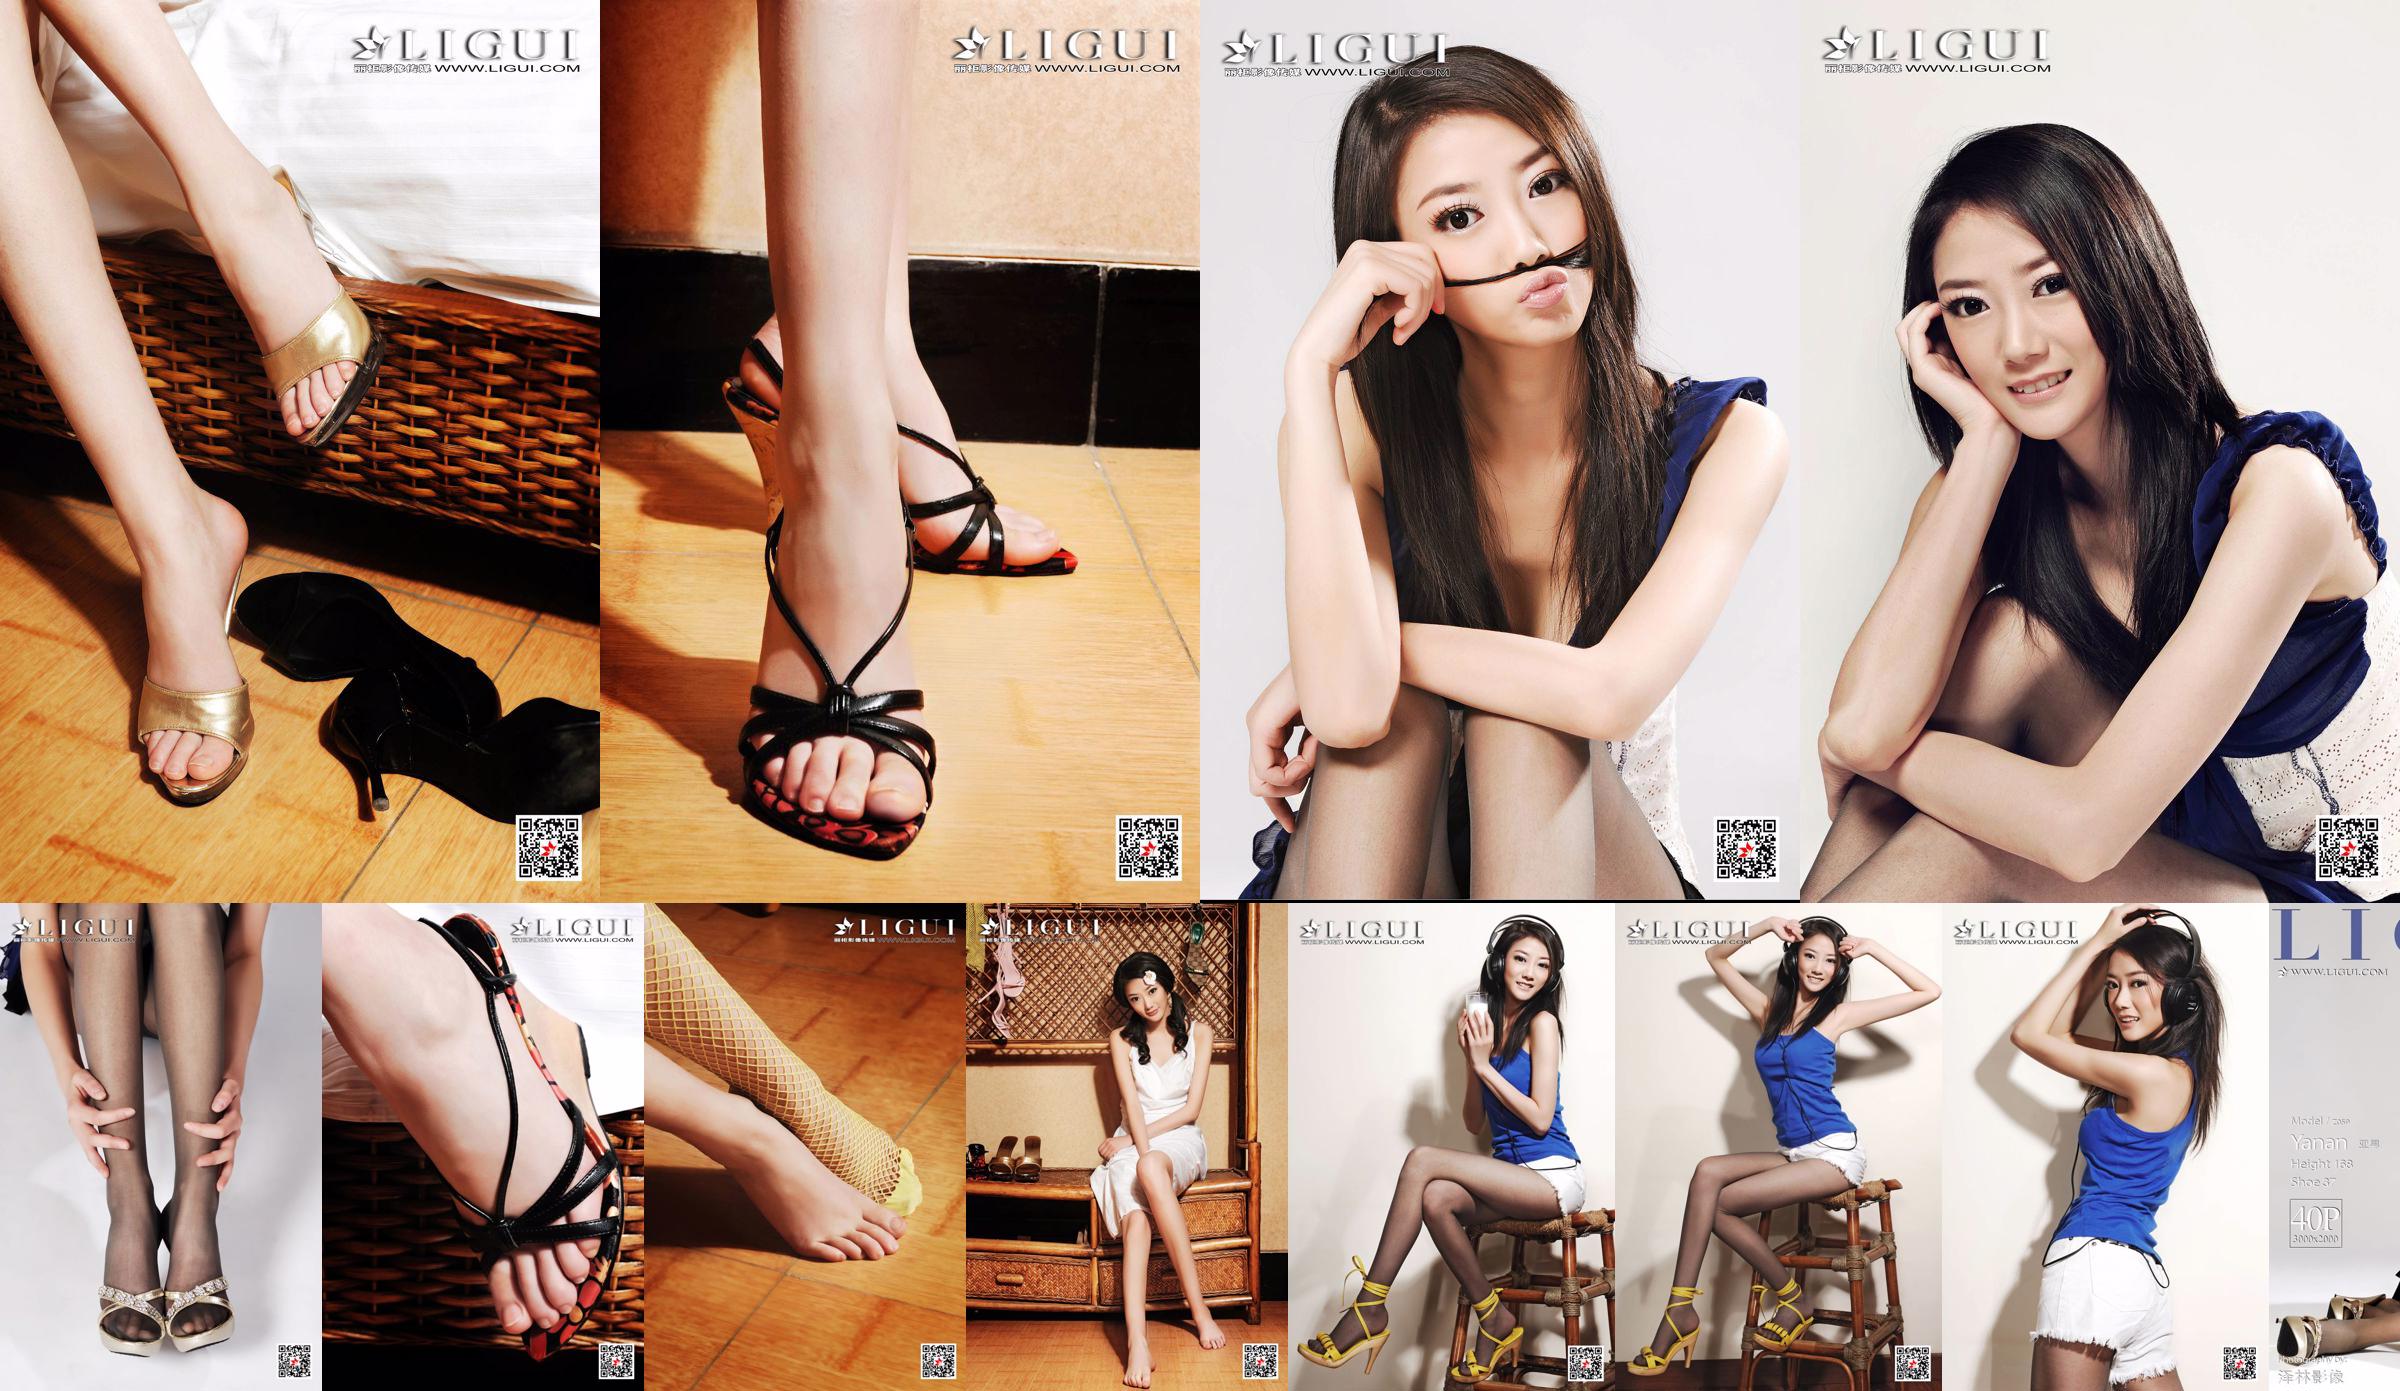 Chàng trai người mẫu châu Á "Cô gái có khí chất chân dài" [Ligui Ligui] No.272730 Trang 3